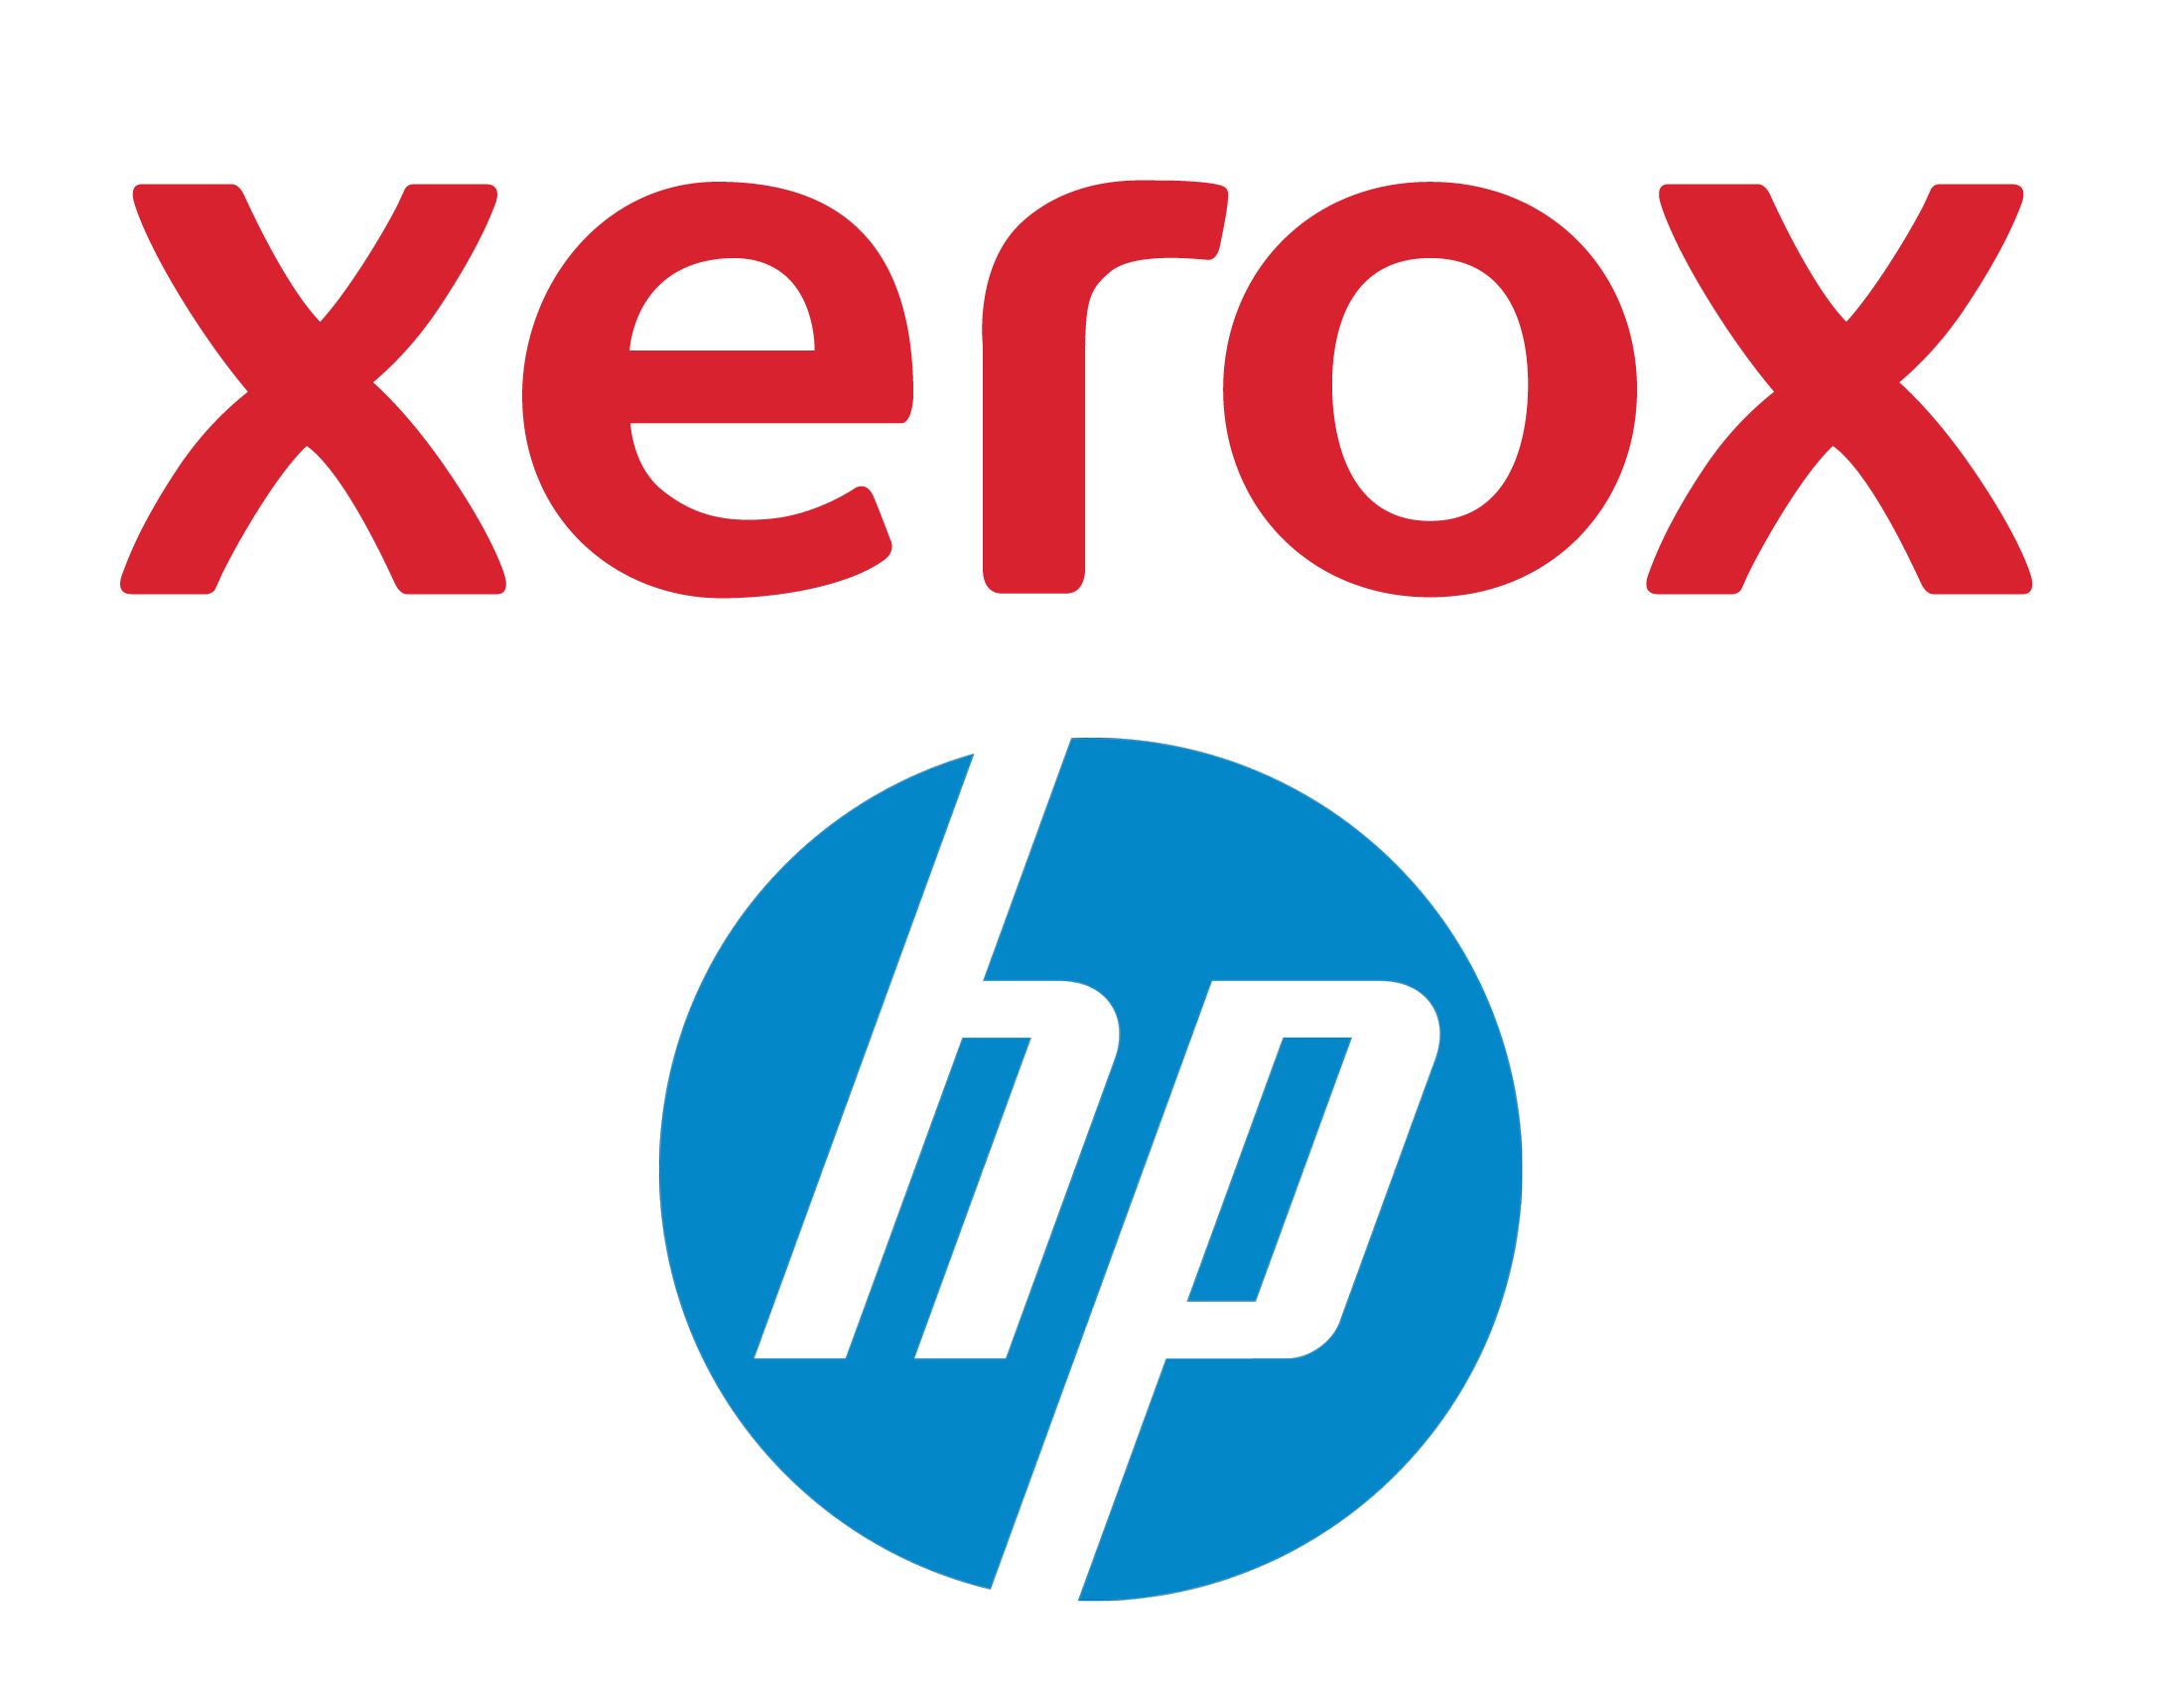 По-прежнему недооценивают: HP вновь отвергла предложение Xerox